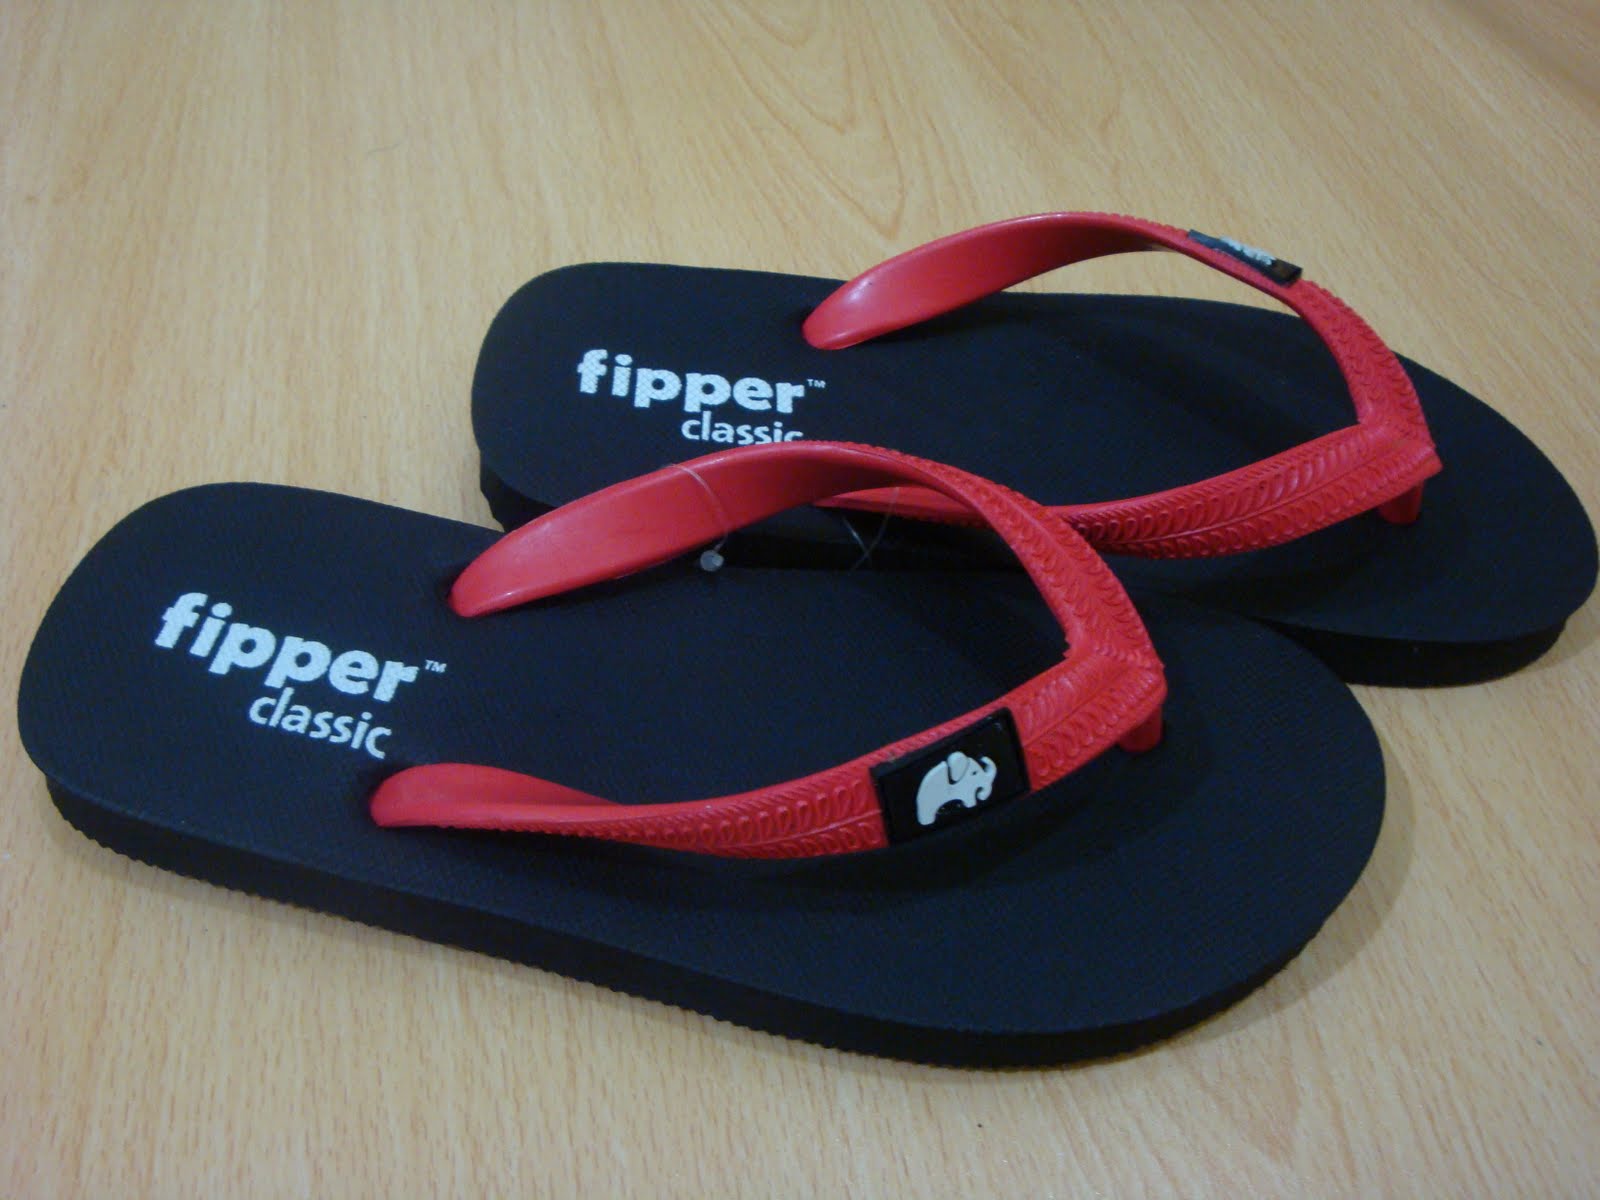  Fipper Slipper  FIPPER  CLASSIC